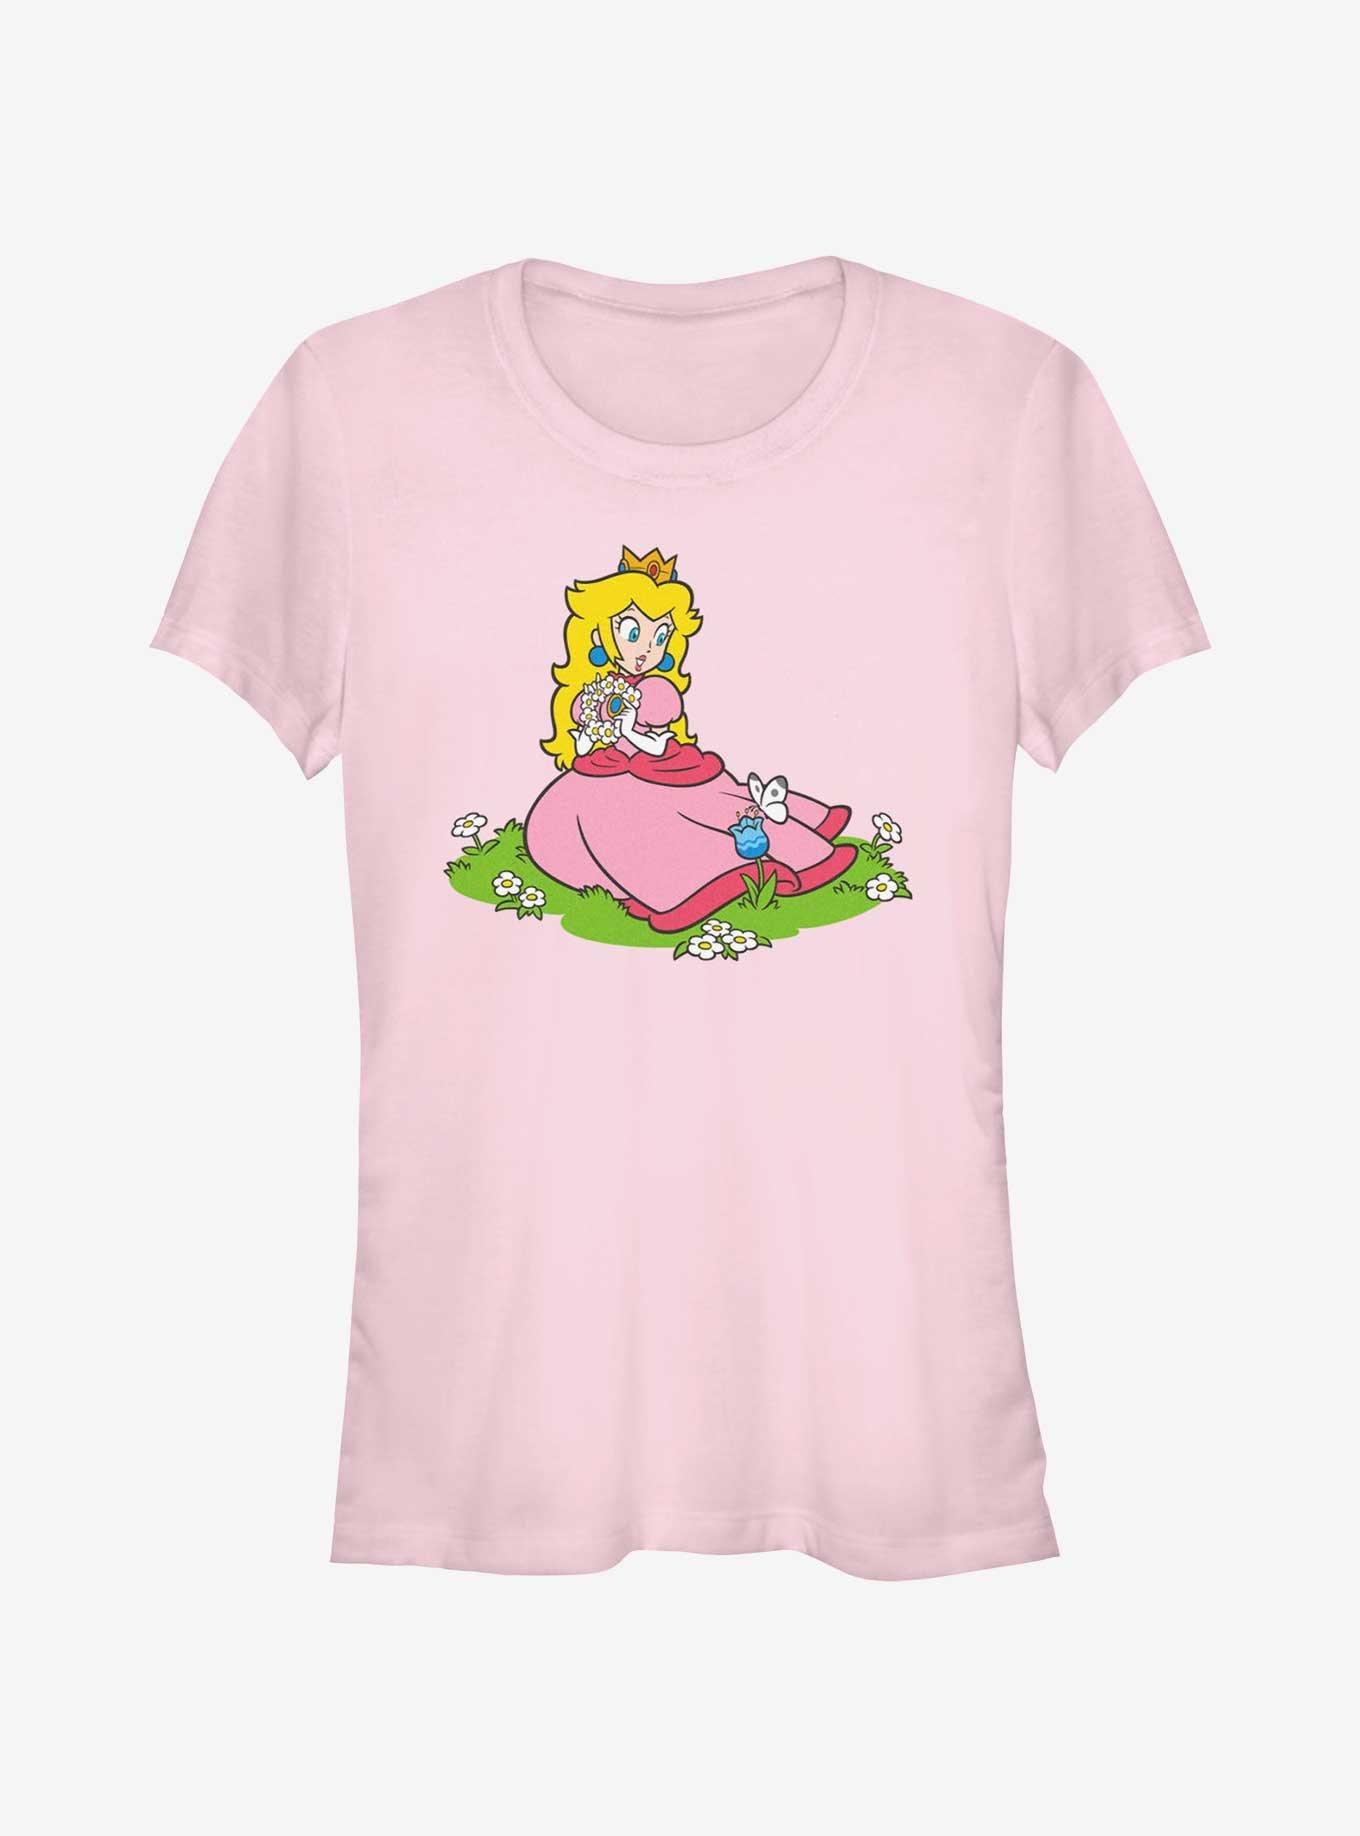 Nintendo Peach And A Butterfly Girls T-Shirt